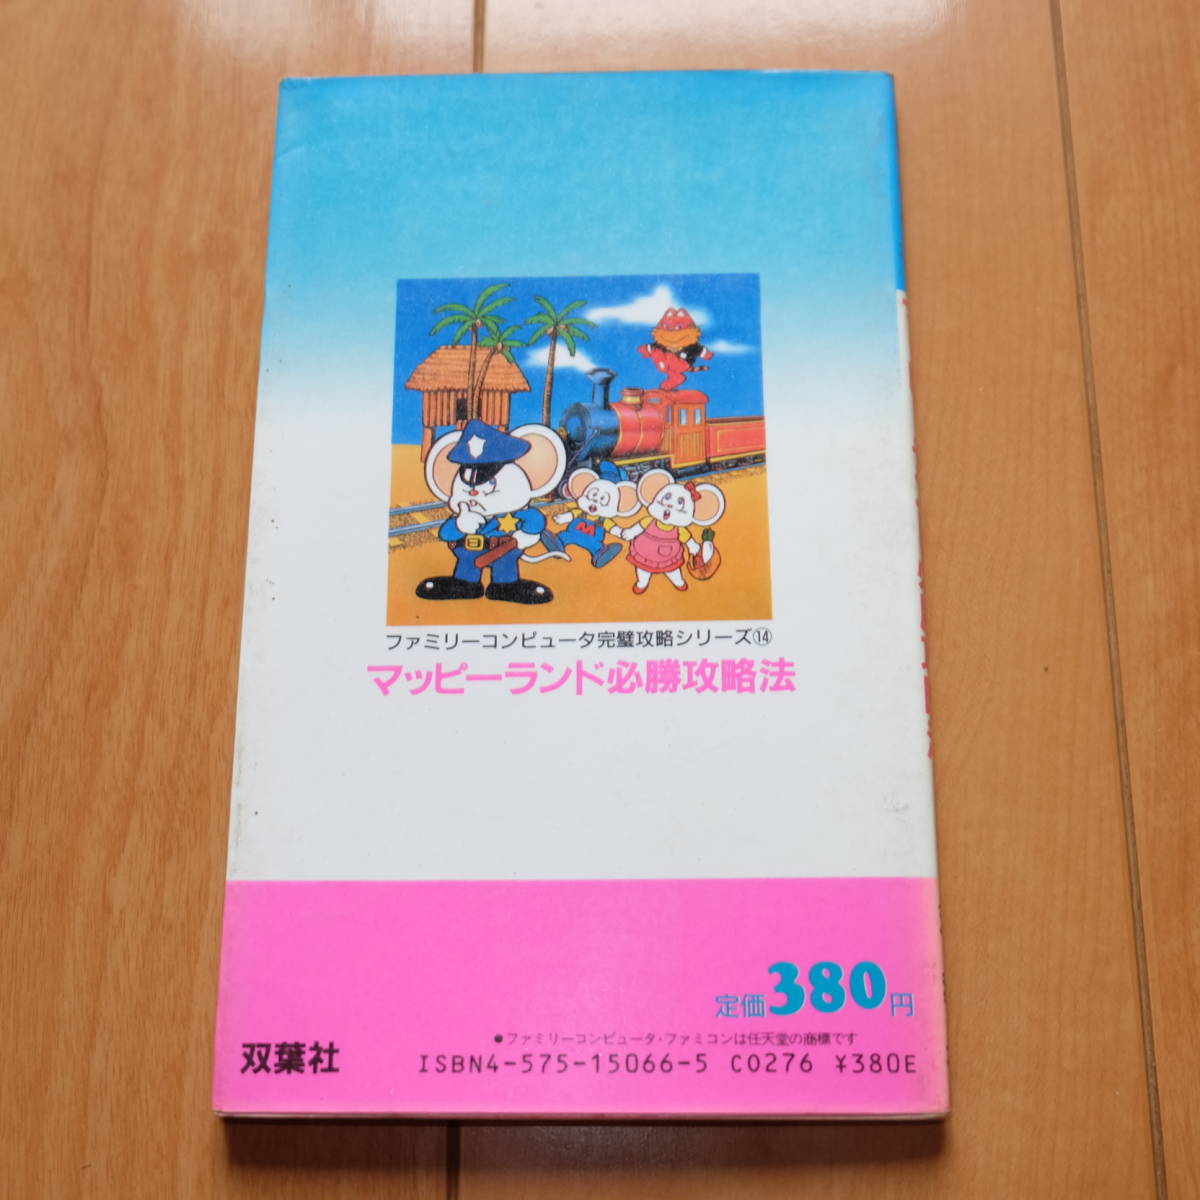  гид mapi- Land обязательно . стратегия . лист фирма безупречный .. серии 14 Family компьютер Famicom FC 1986 год 12 месяц 27 день no. 1.